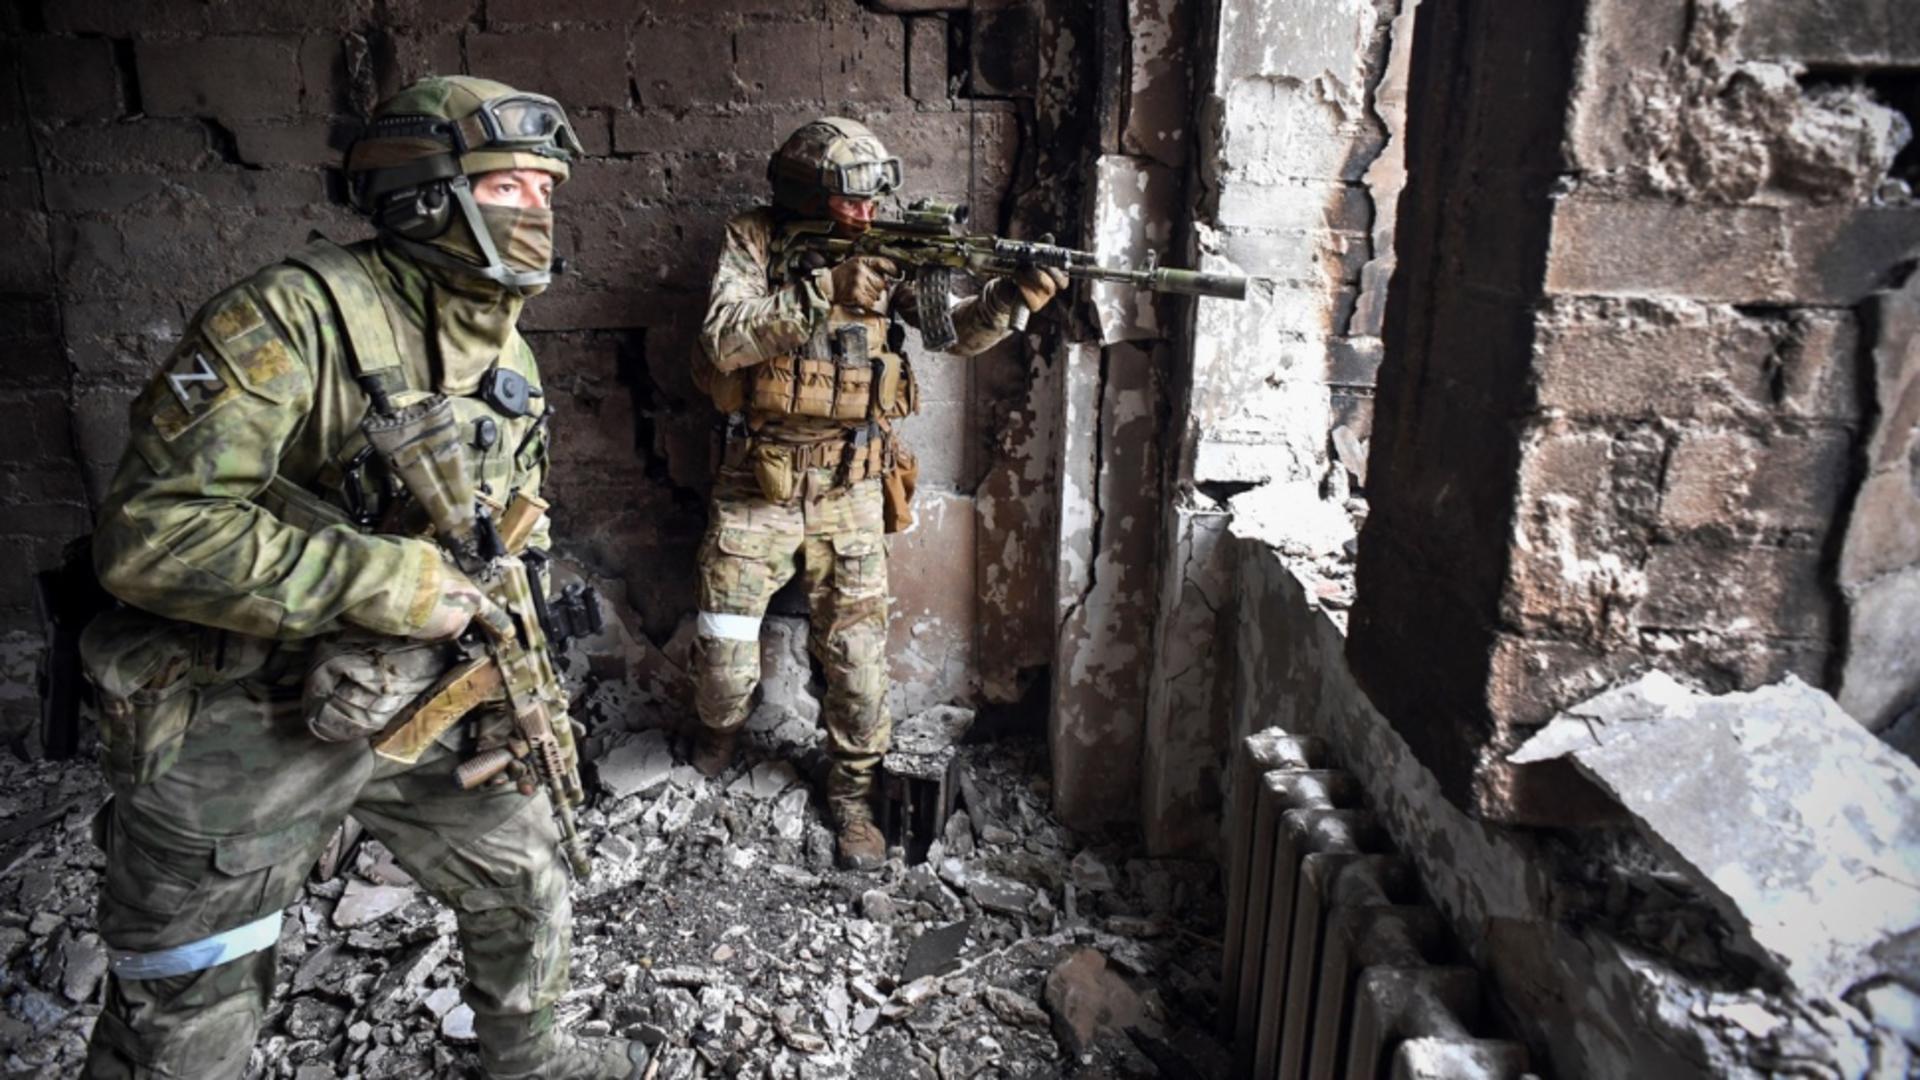 Război în Ucraina, ziua 521 – Mai multe explozii în Rusia / Rachete ucrainene doborâte – LIVETEXT